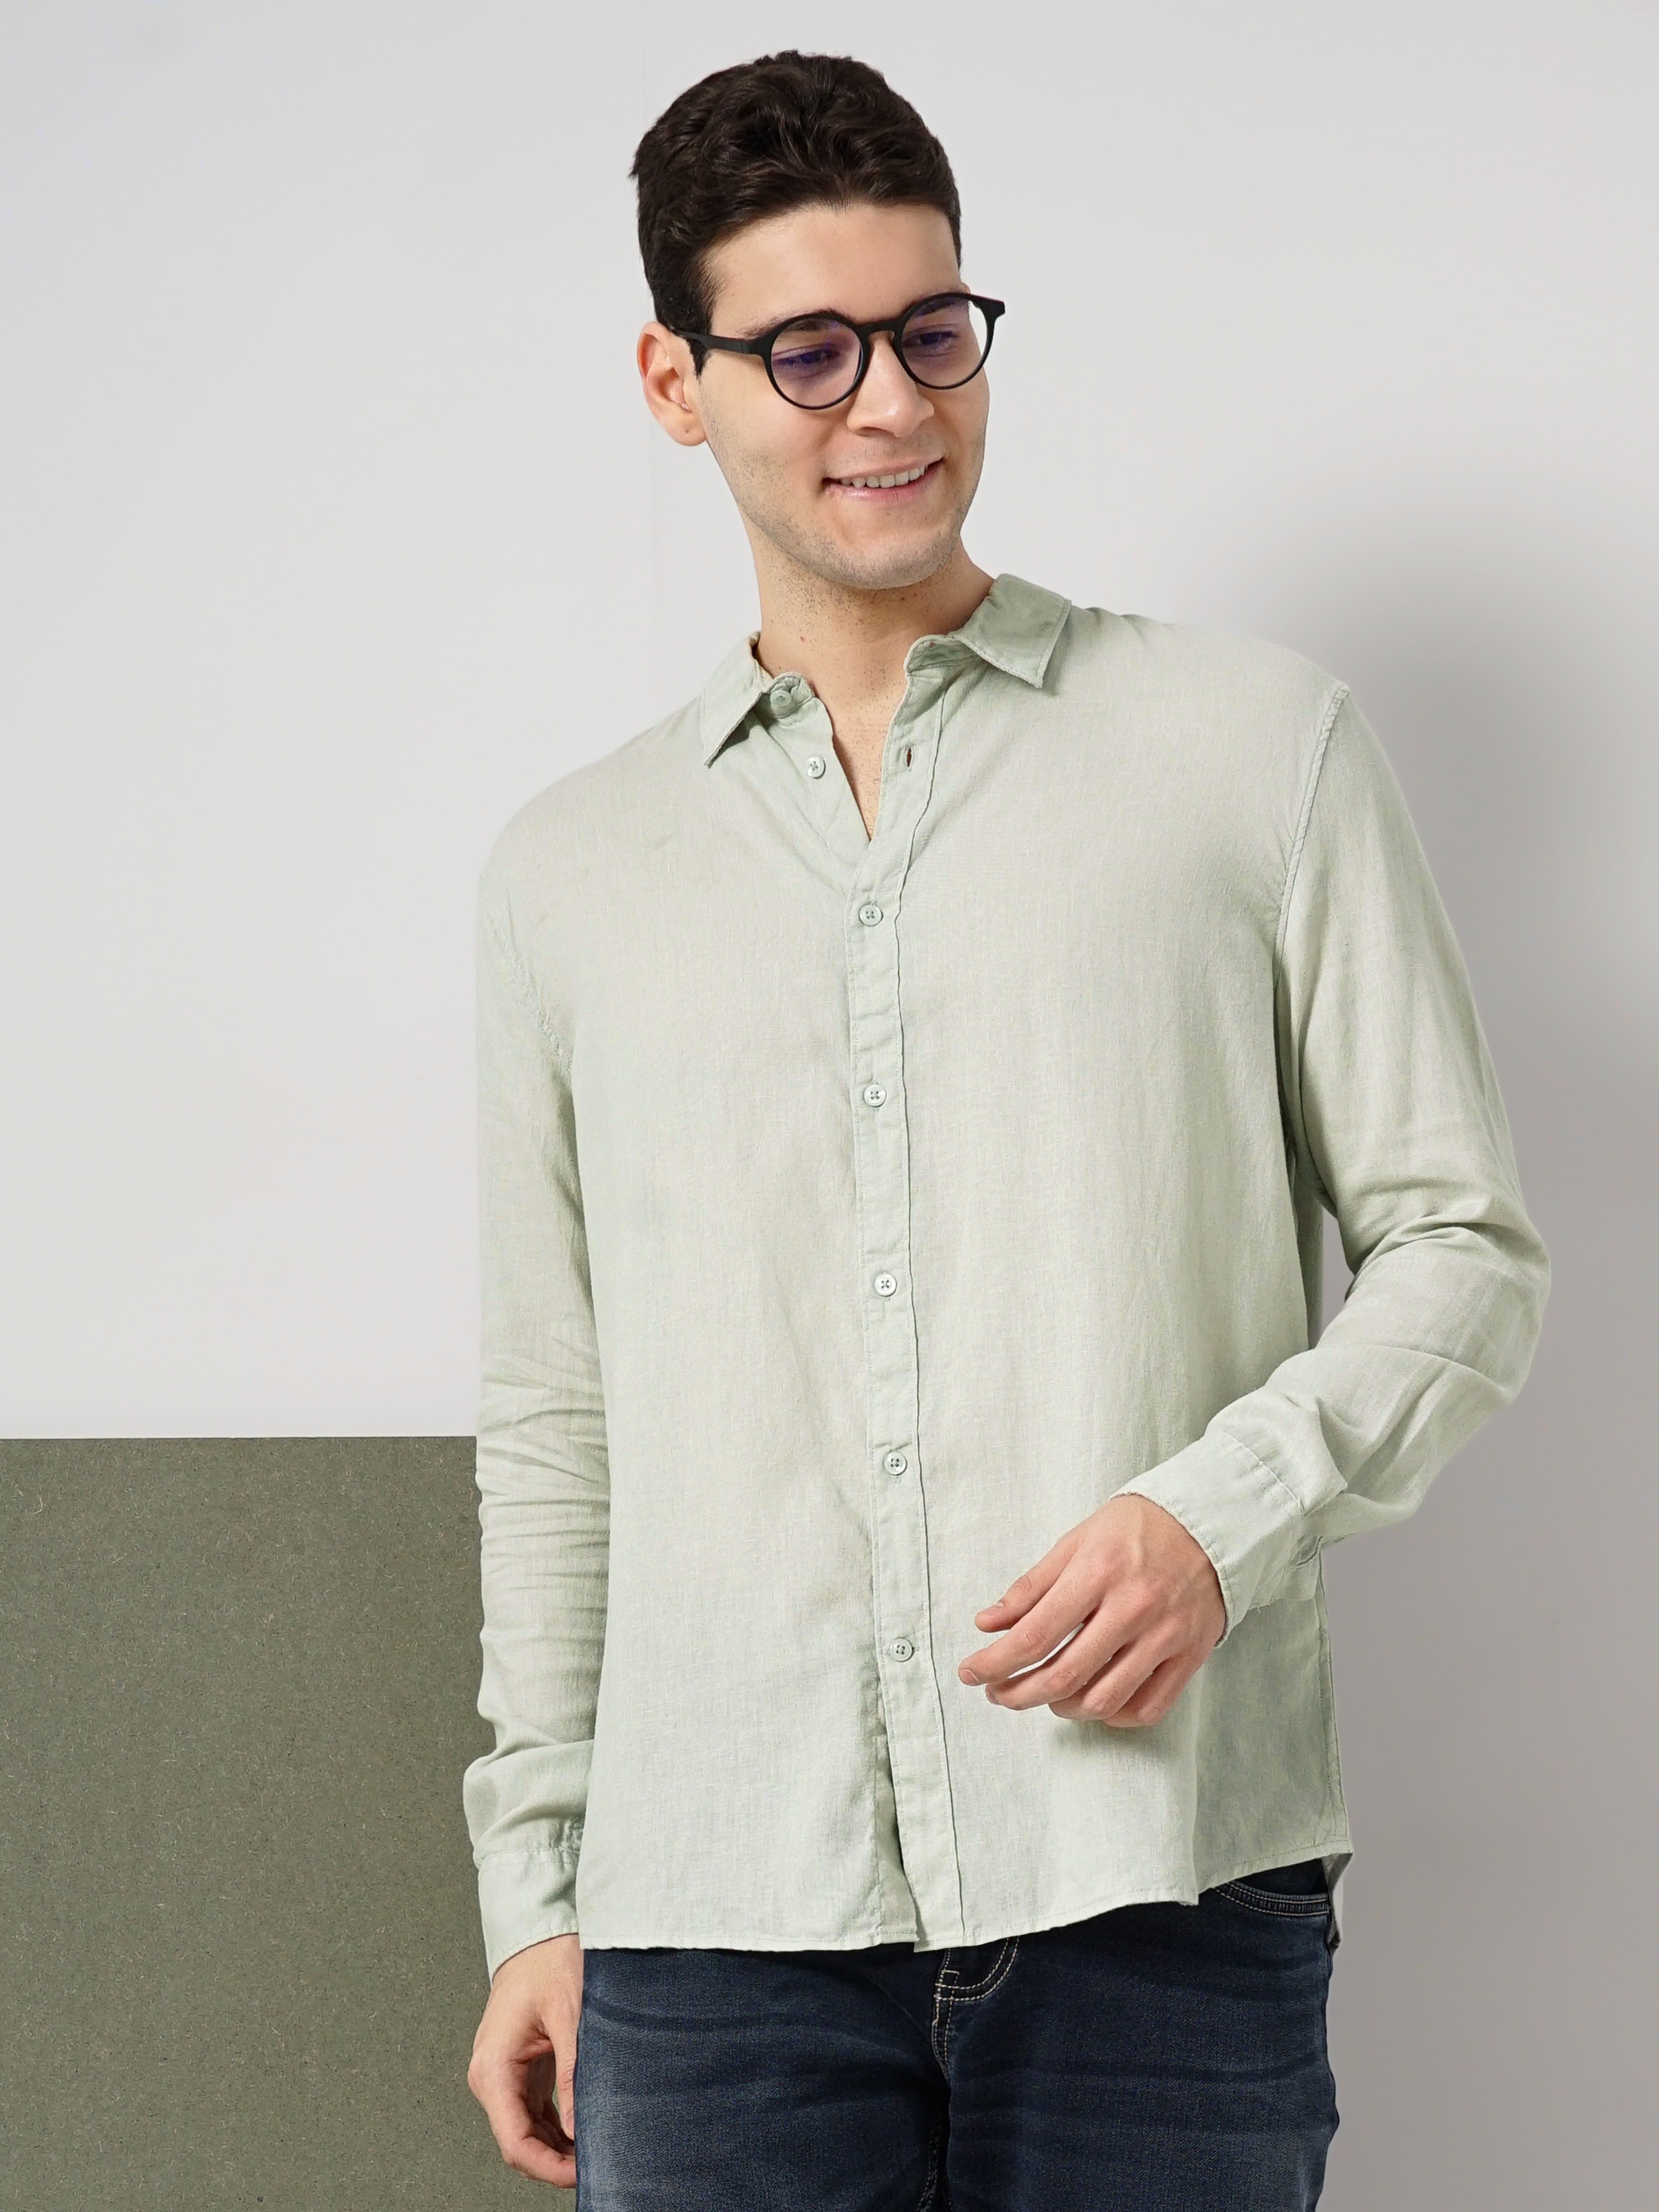 Celio Men's Solid Linen Shirt